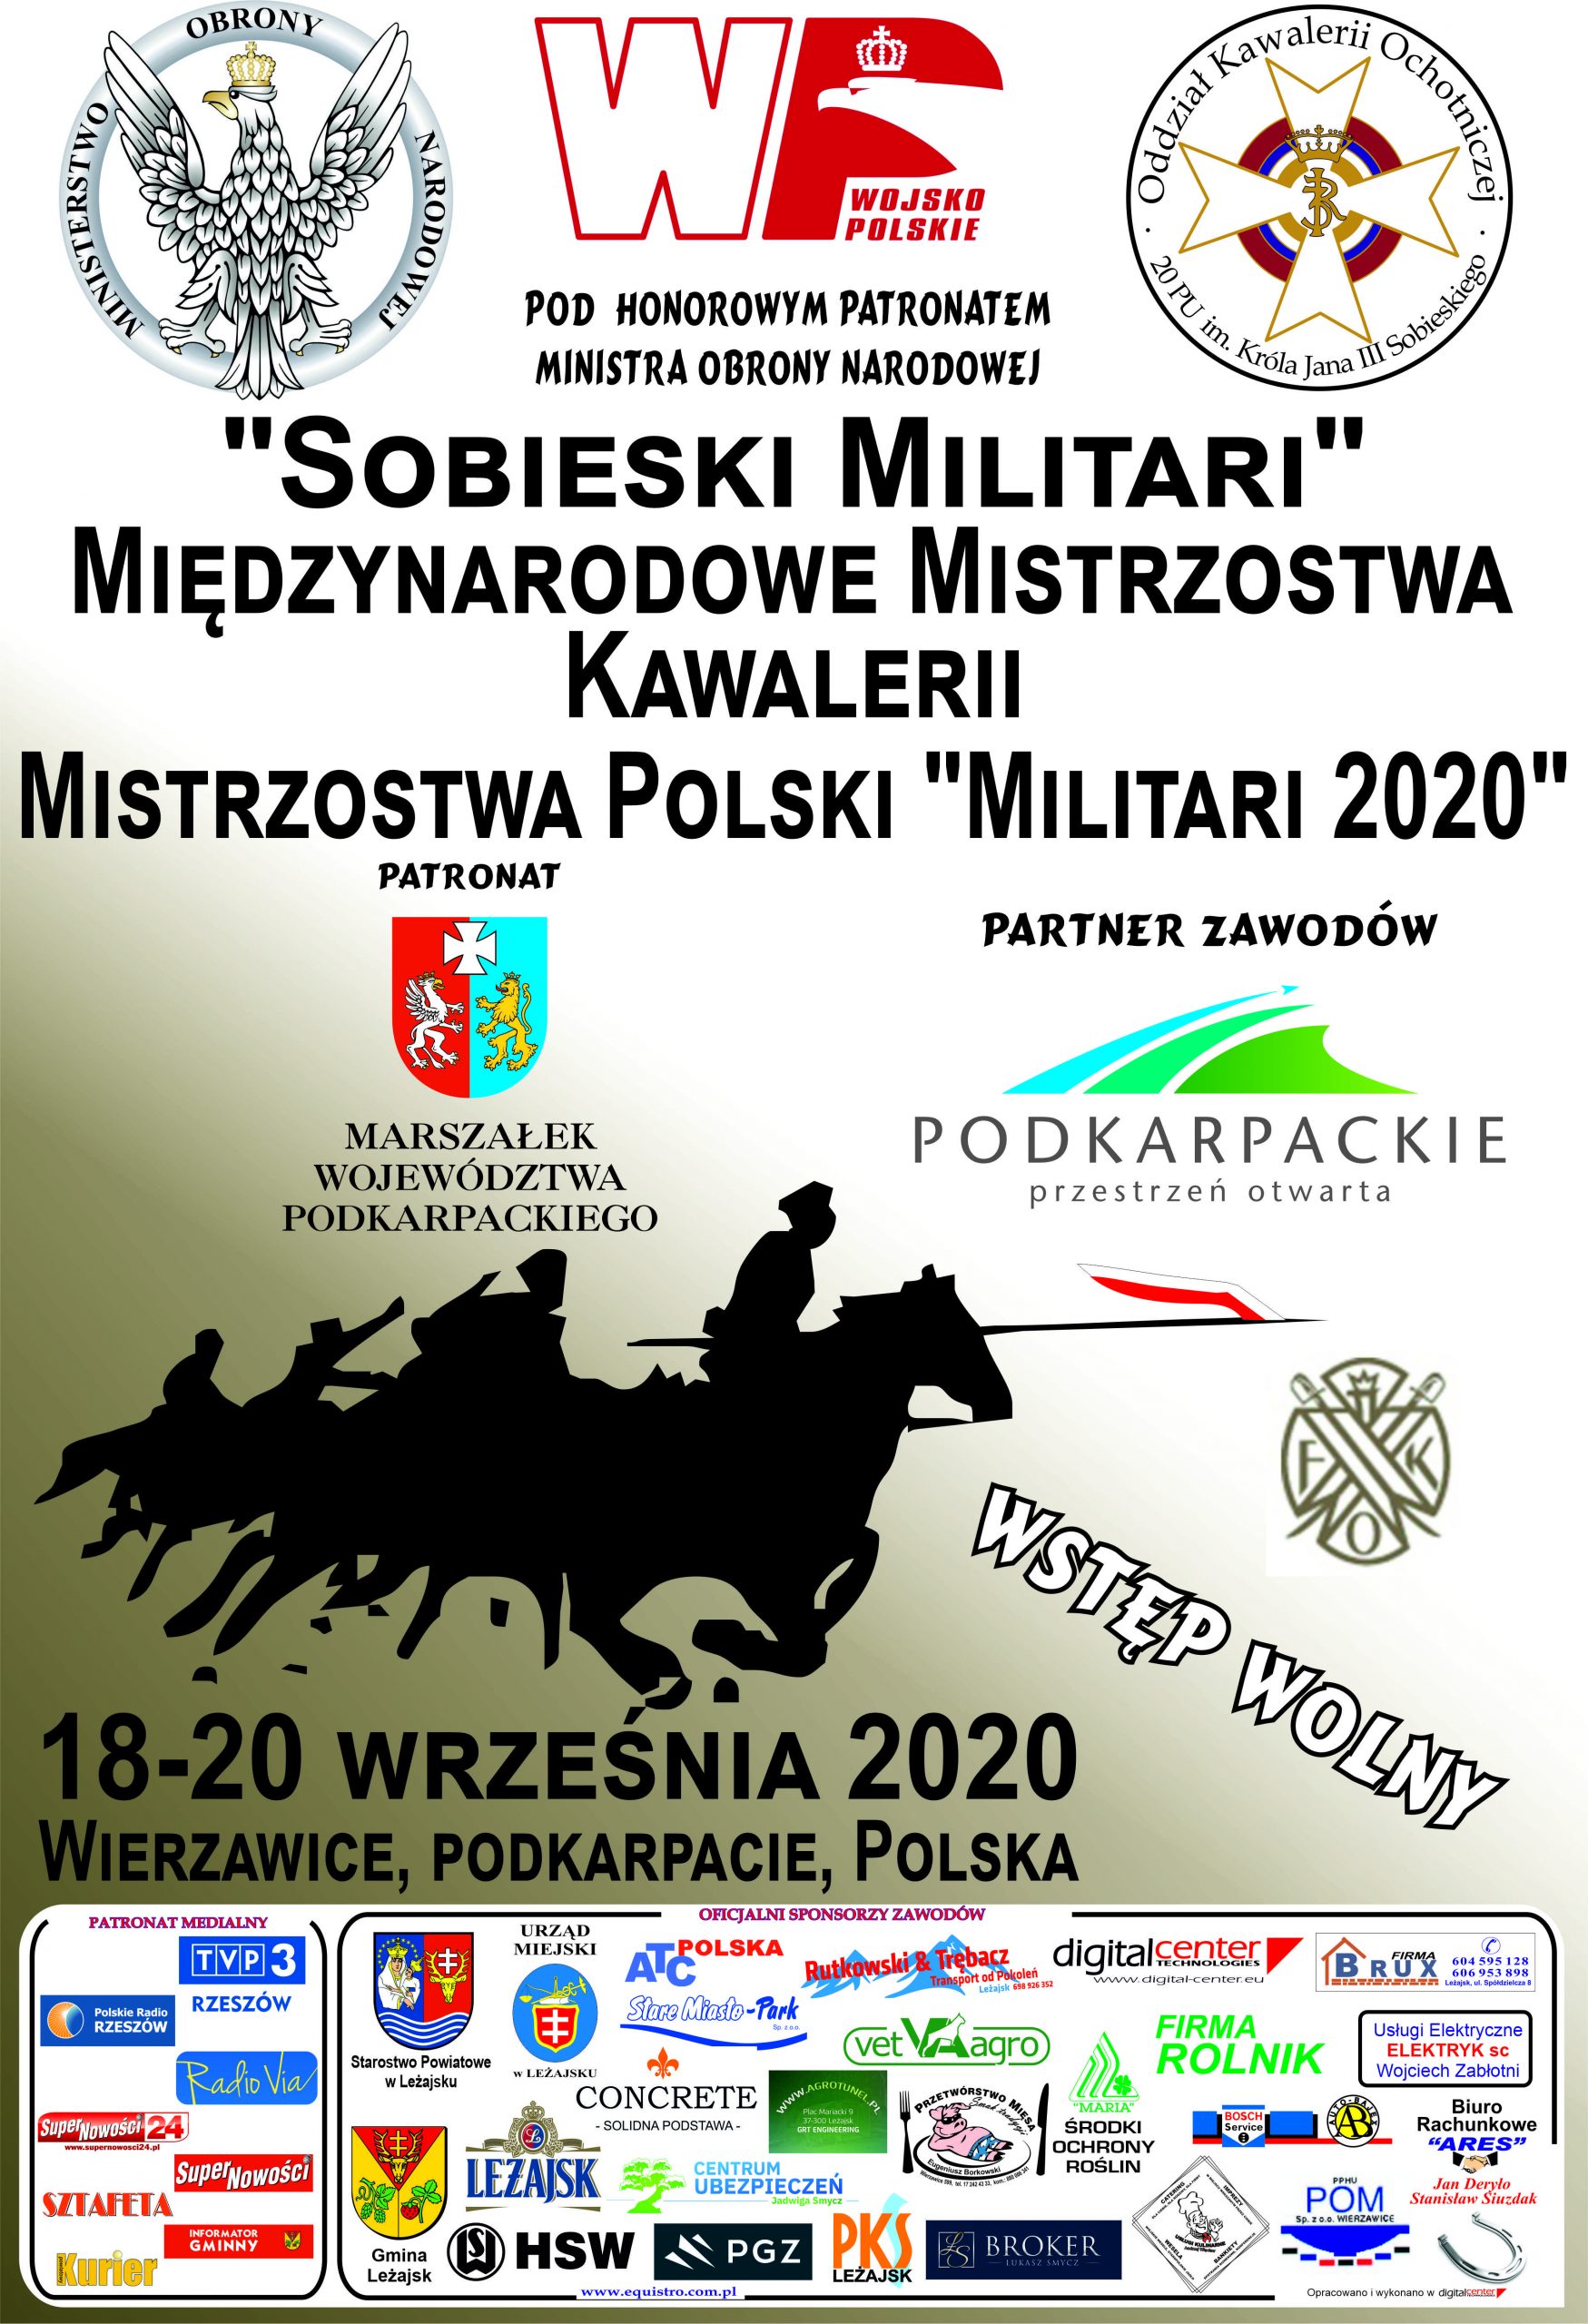 „Sobieski Militari” Międzynarodowe Mistrzostwa Kawalerii oraz Mistrzostwa Polski „Militari 2020”